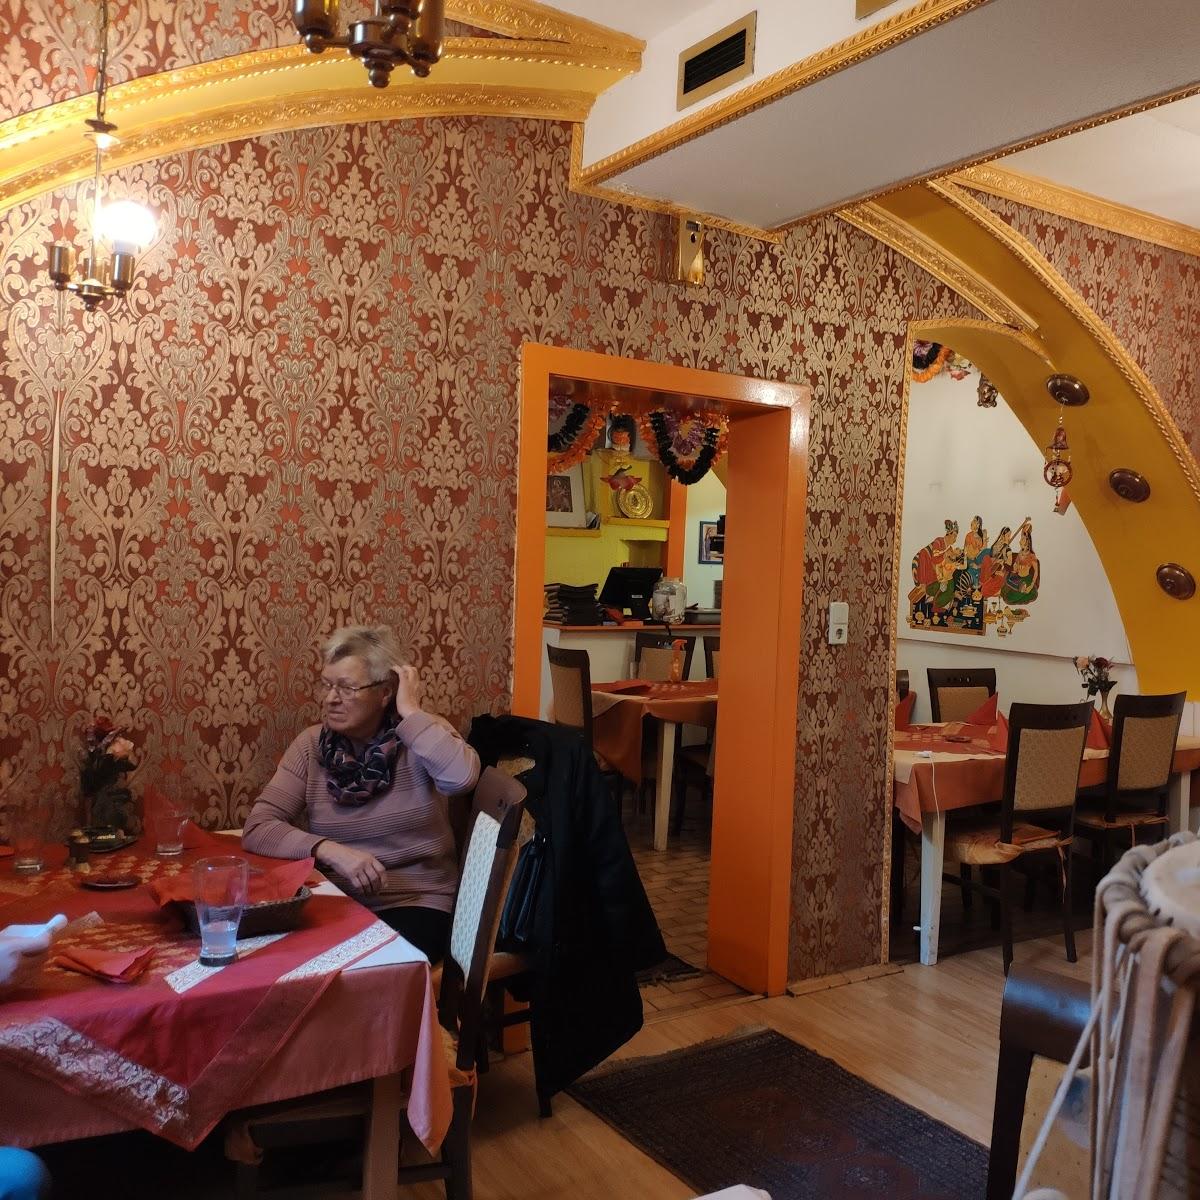 Restaurant "Ganesha- Indisches Spezialitatenrestaurant" in Graz